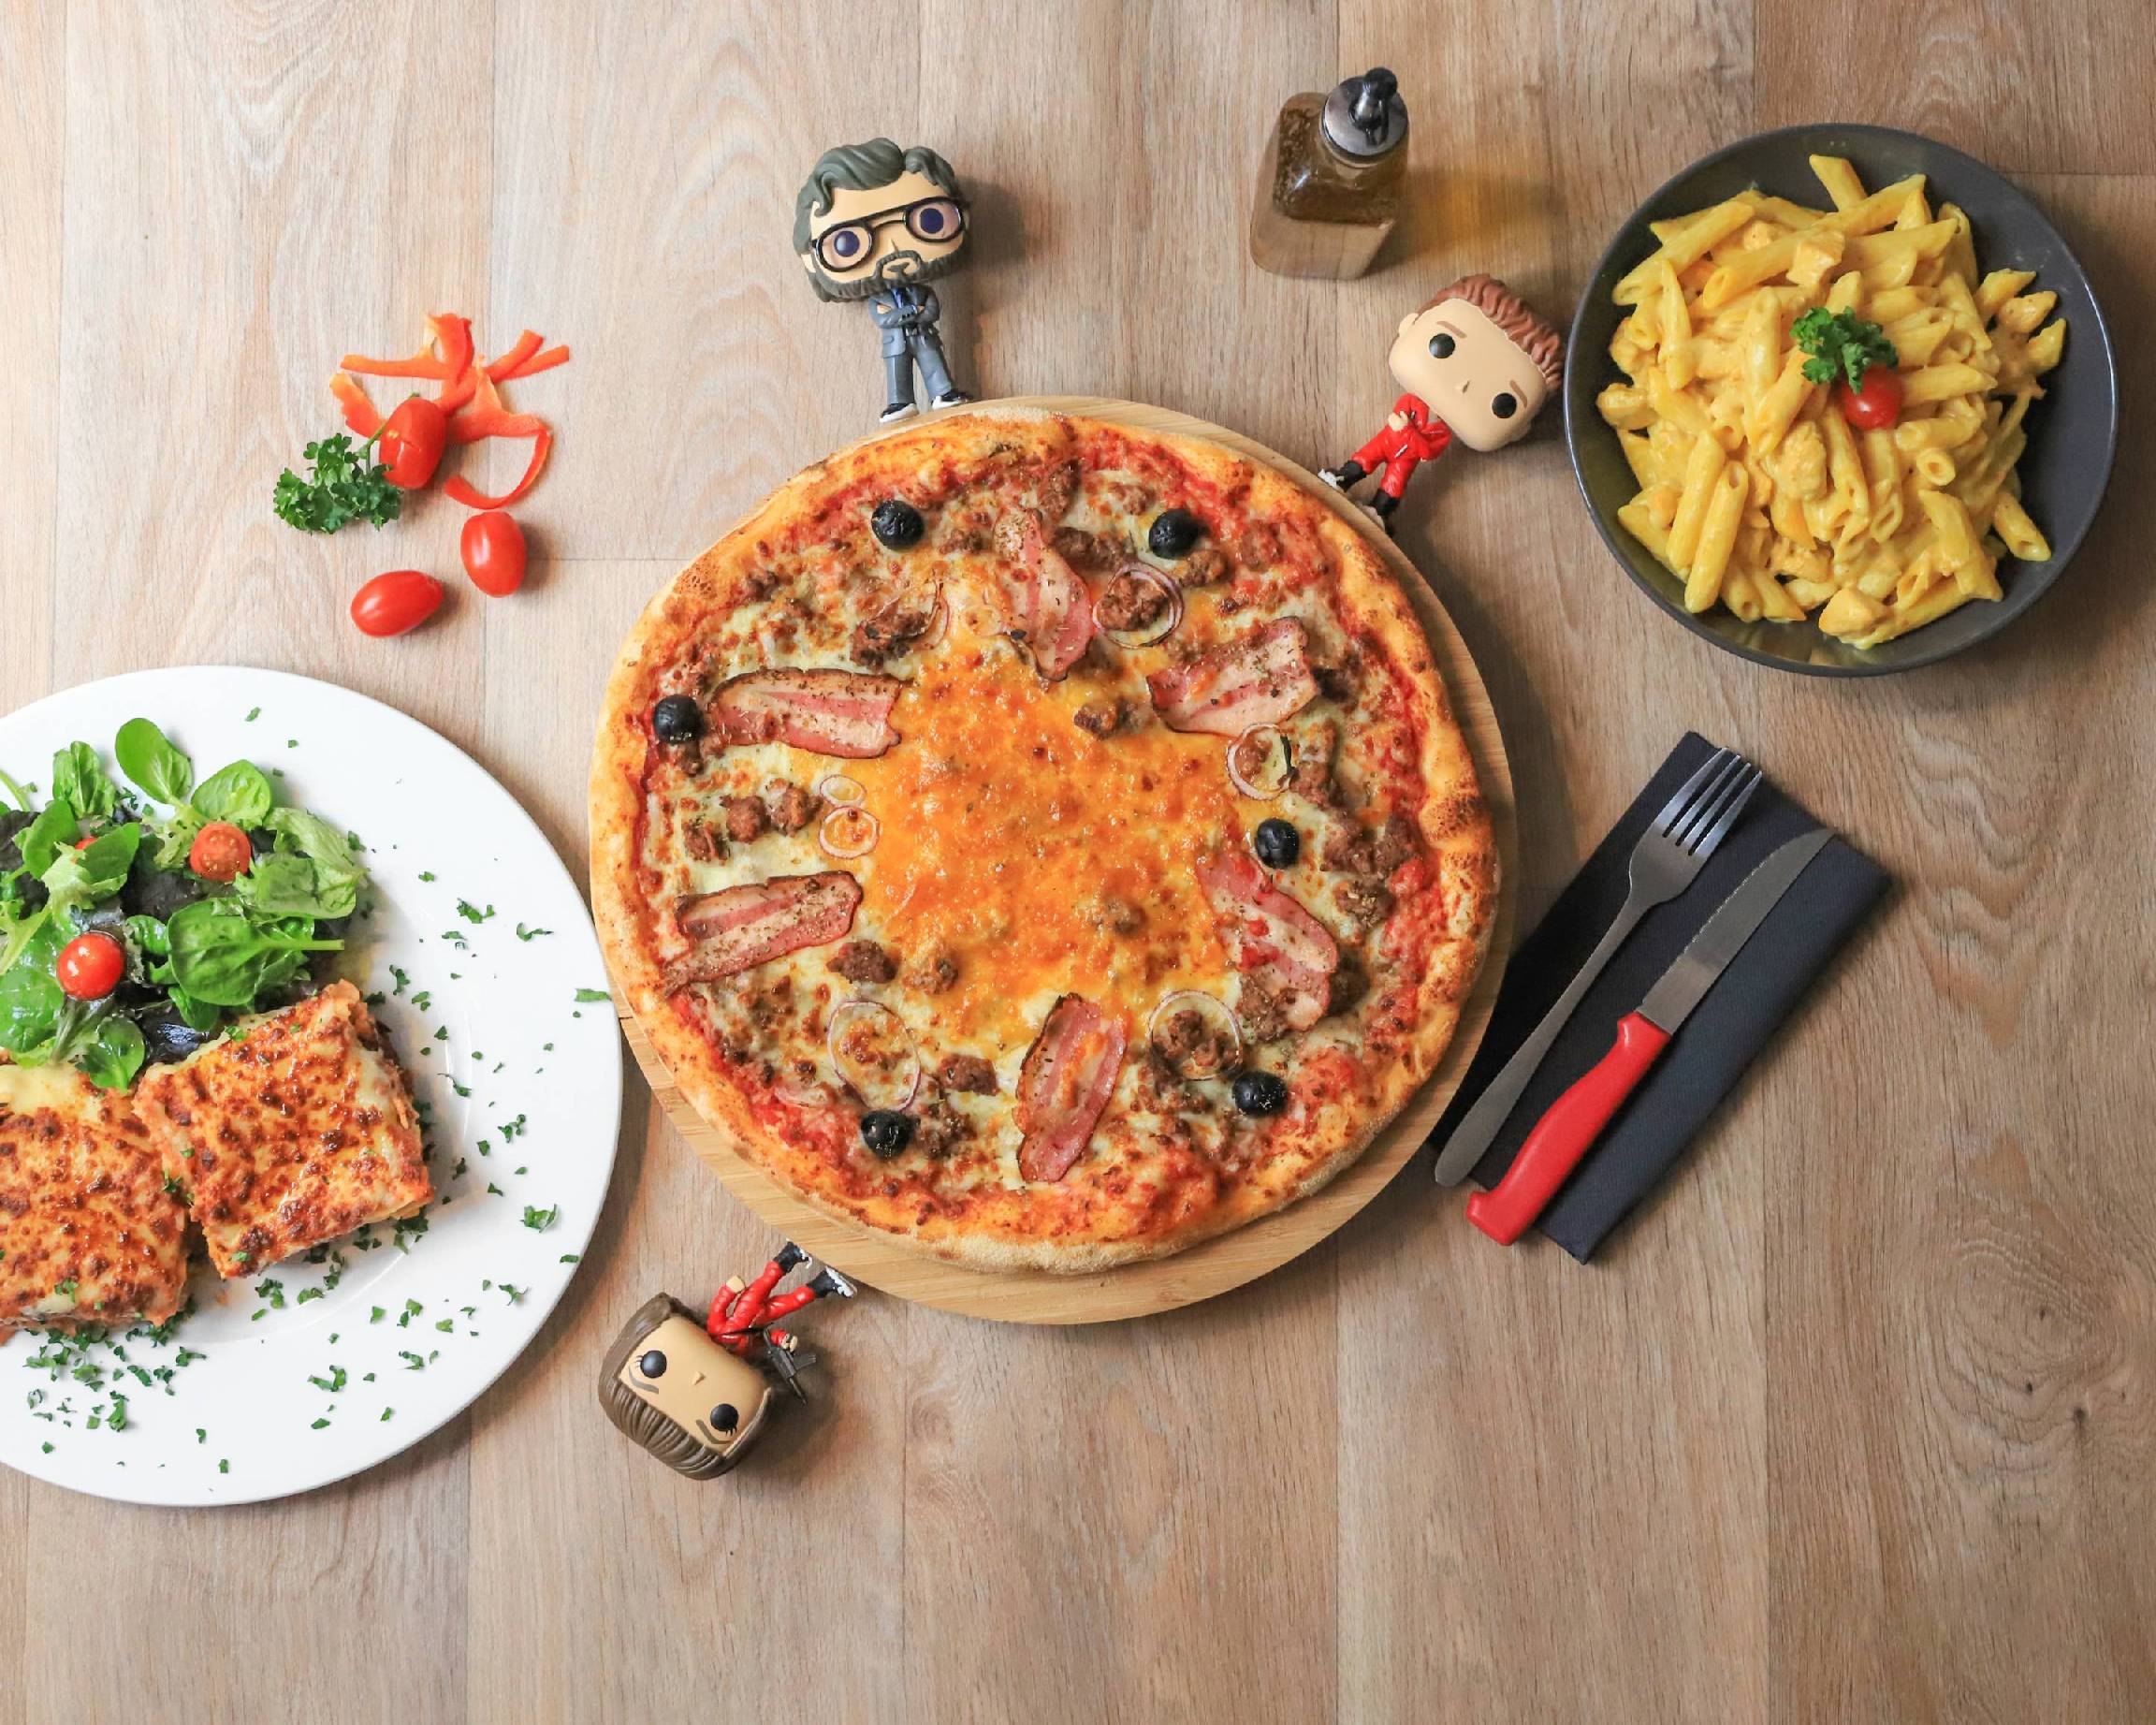 tablier de cuisine Pizza-Addict blanc – L'atelier Suisse